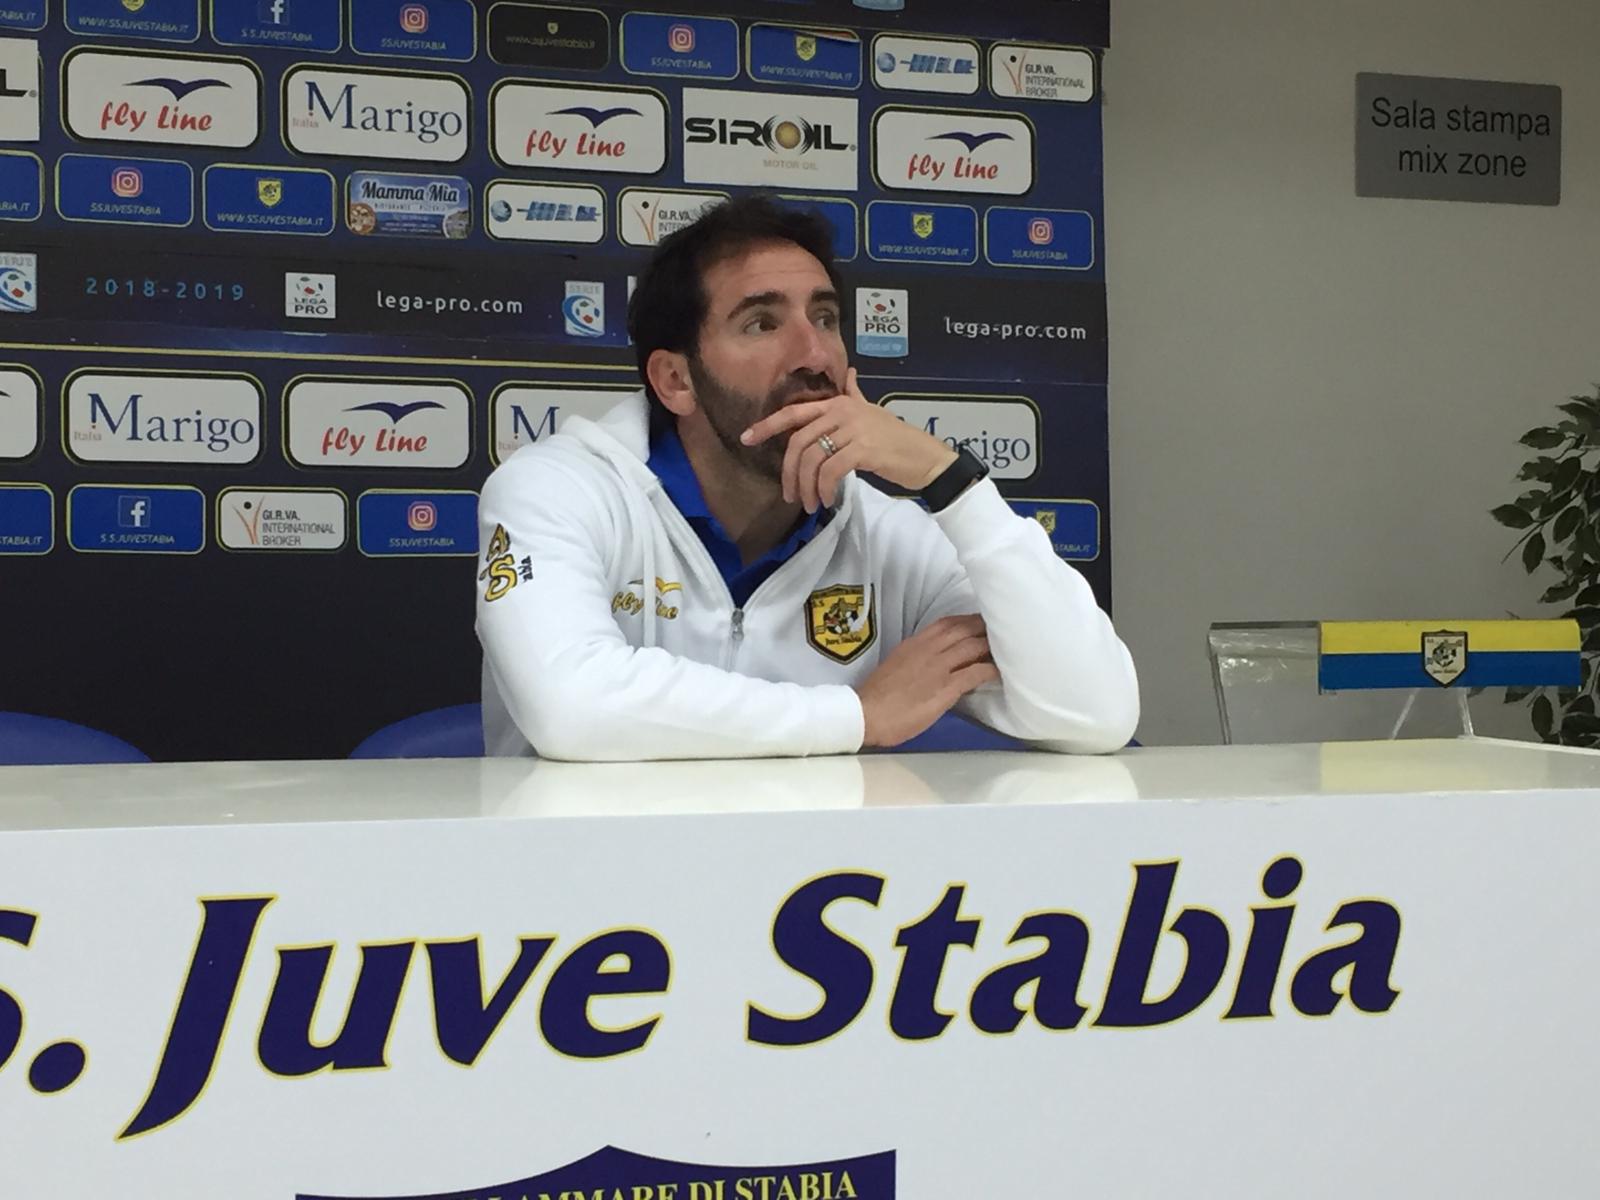 Caserta, Juve Stabia: ‘La squadra ha dato tutto fino ad ora. Meritiamo il riposo’